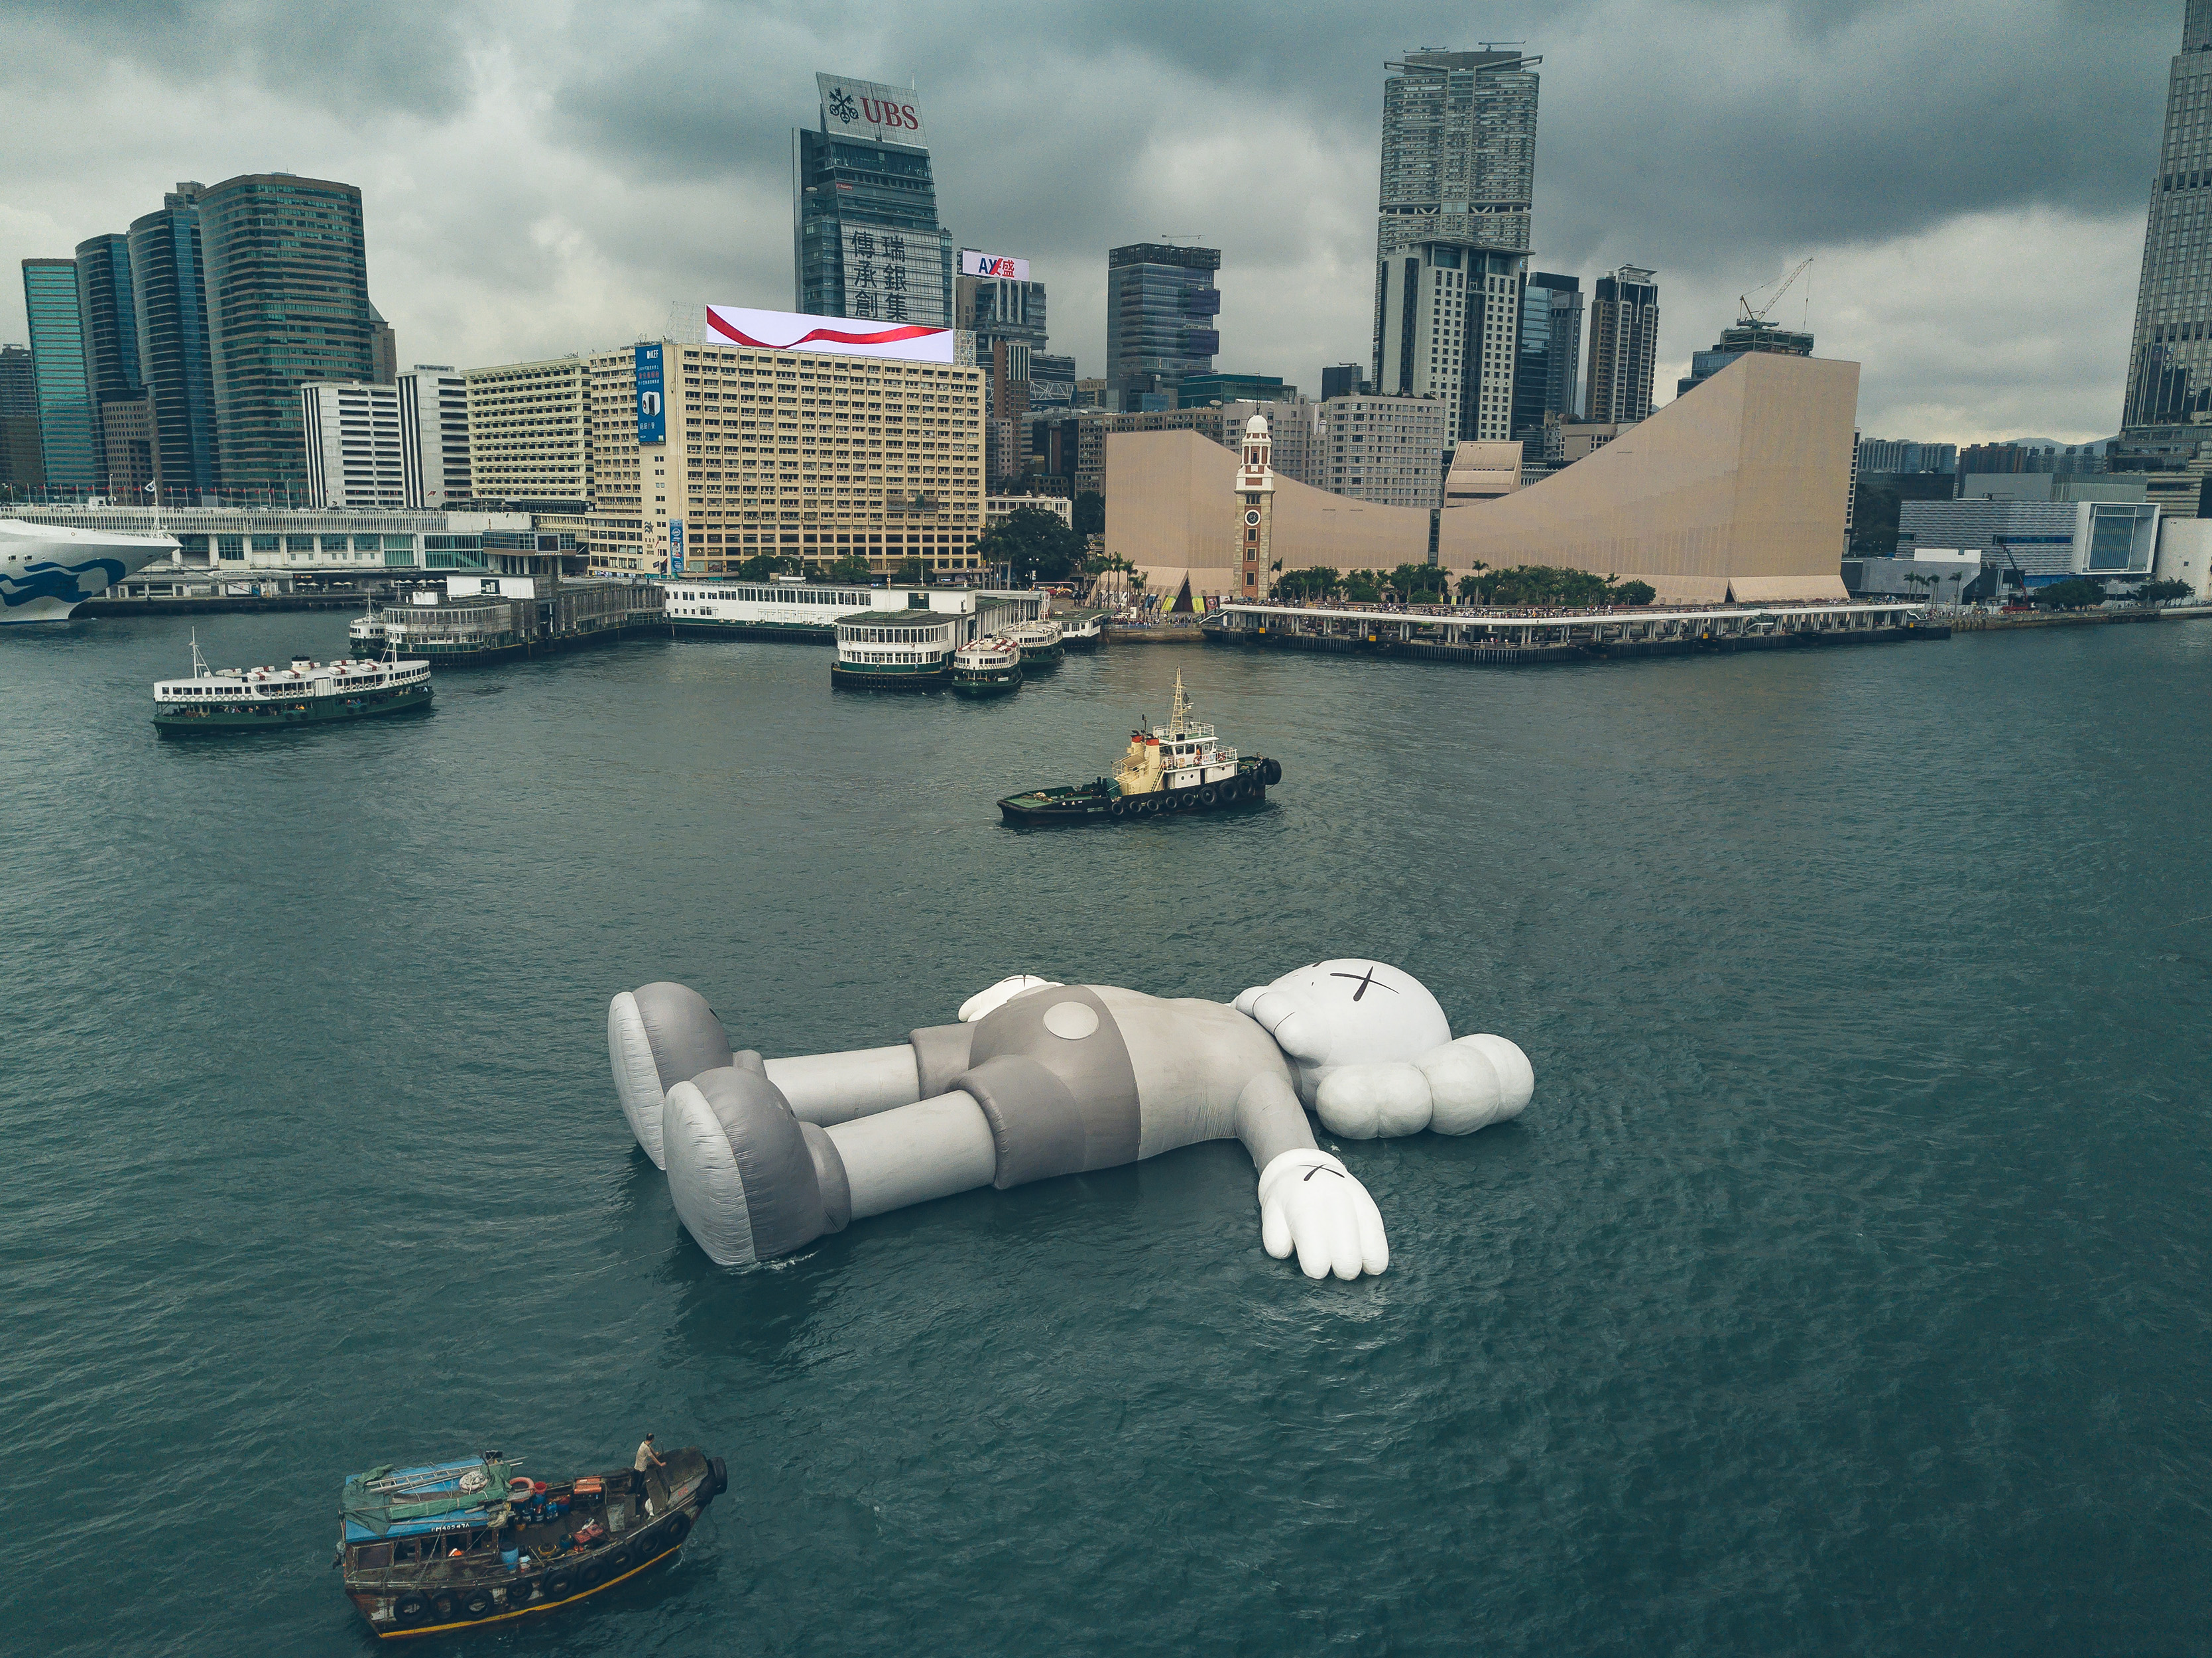 kaws-sculpture-hong-kong-harbor